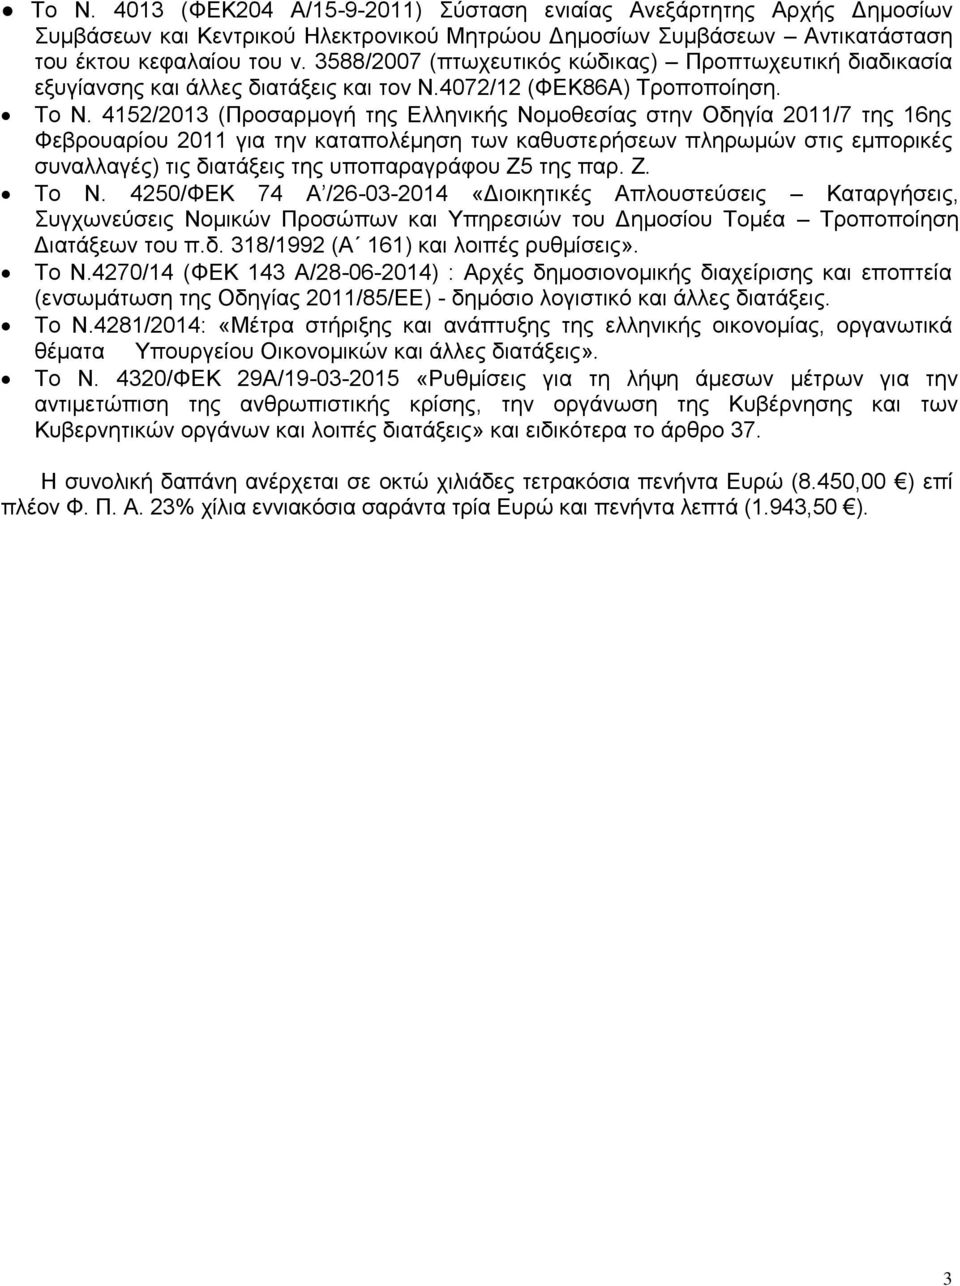 4152/2013 (Προσαρμογή της Ελληνικής Νομοθεσίας στην Οδηγία 2011/7 της 16ης Φεβρουαρίου 2011 για την καταπολέμηση των καθυστερήσεων πληρωμών στις εμπορικές συναλλαγές) τις διατάξεις της υποπαραγράφου